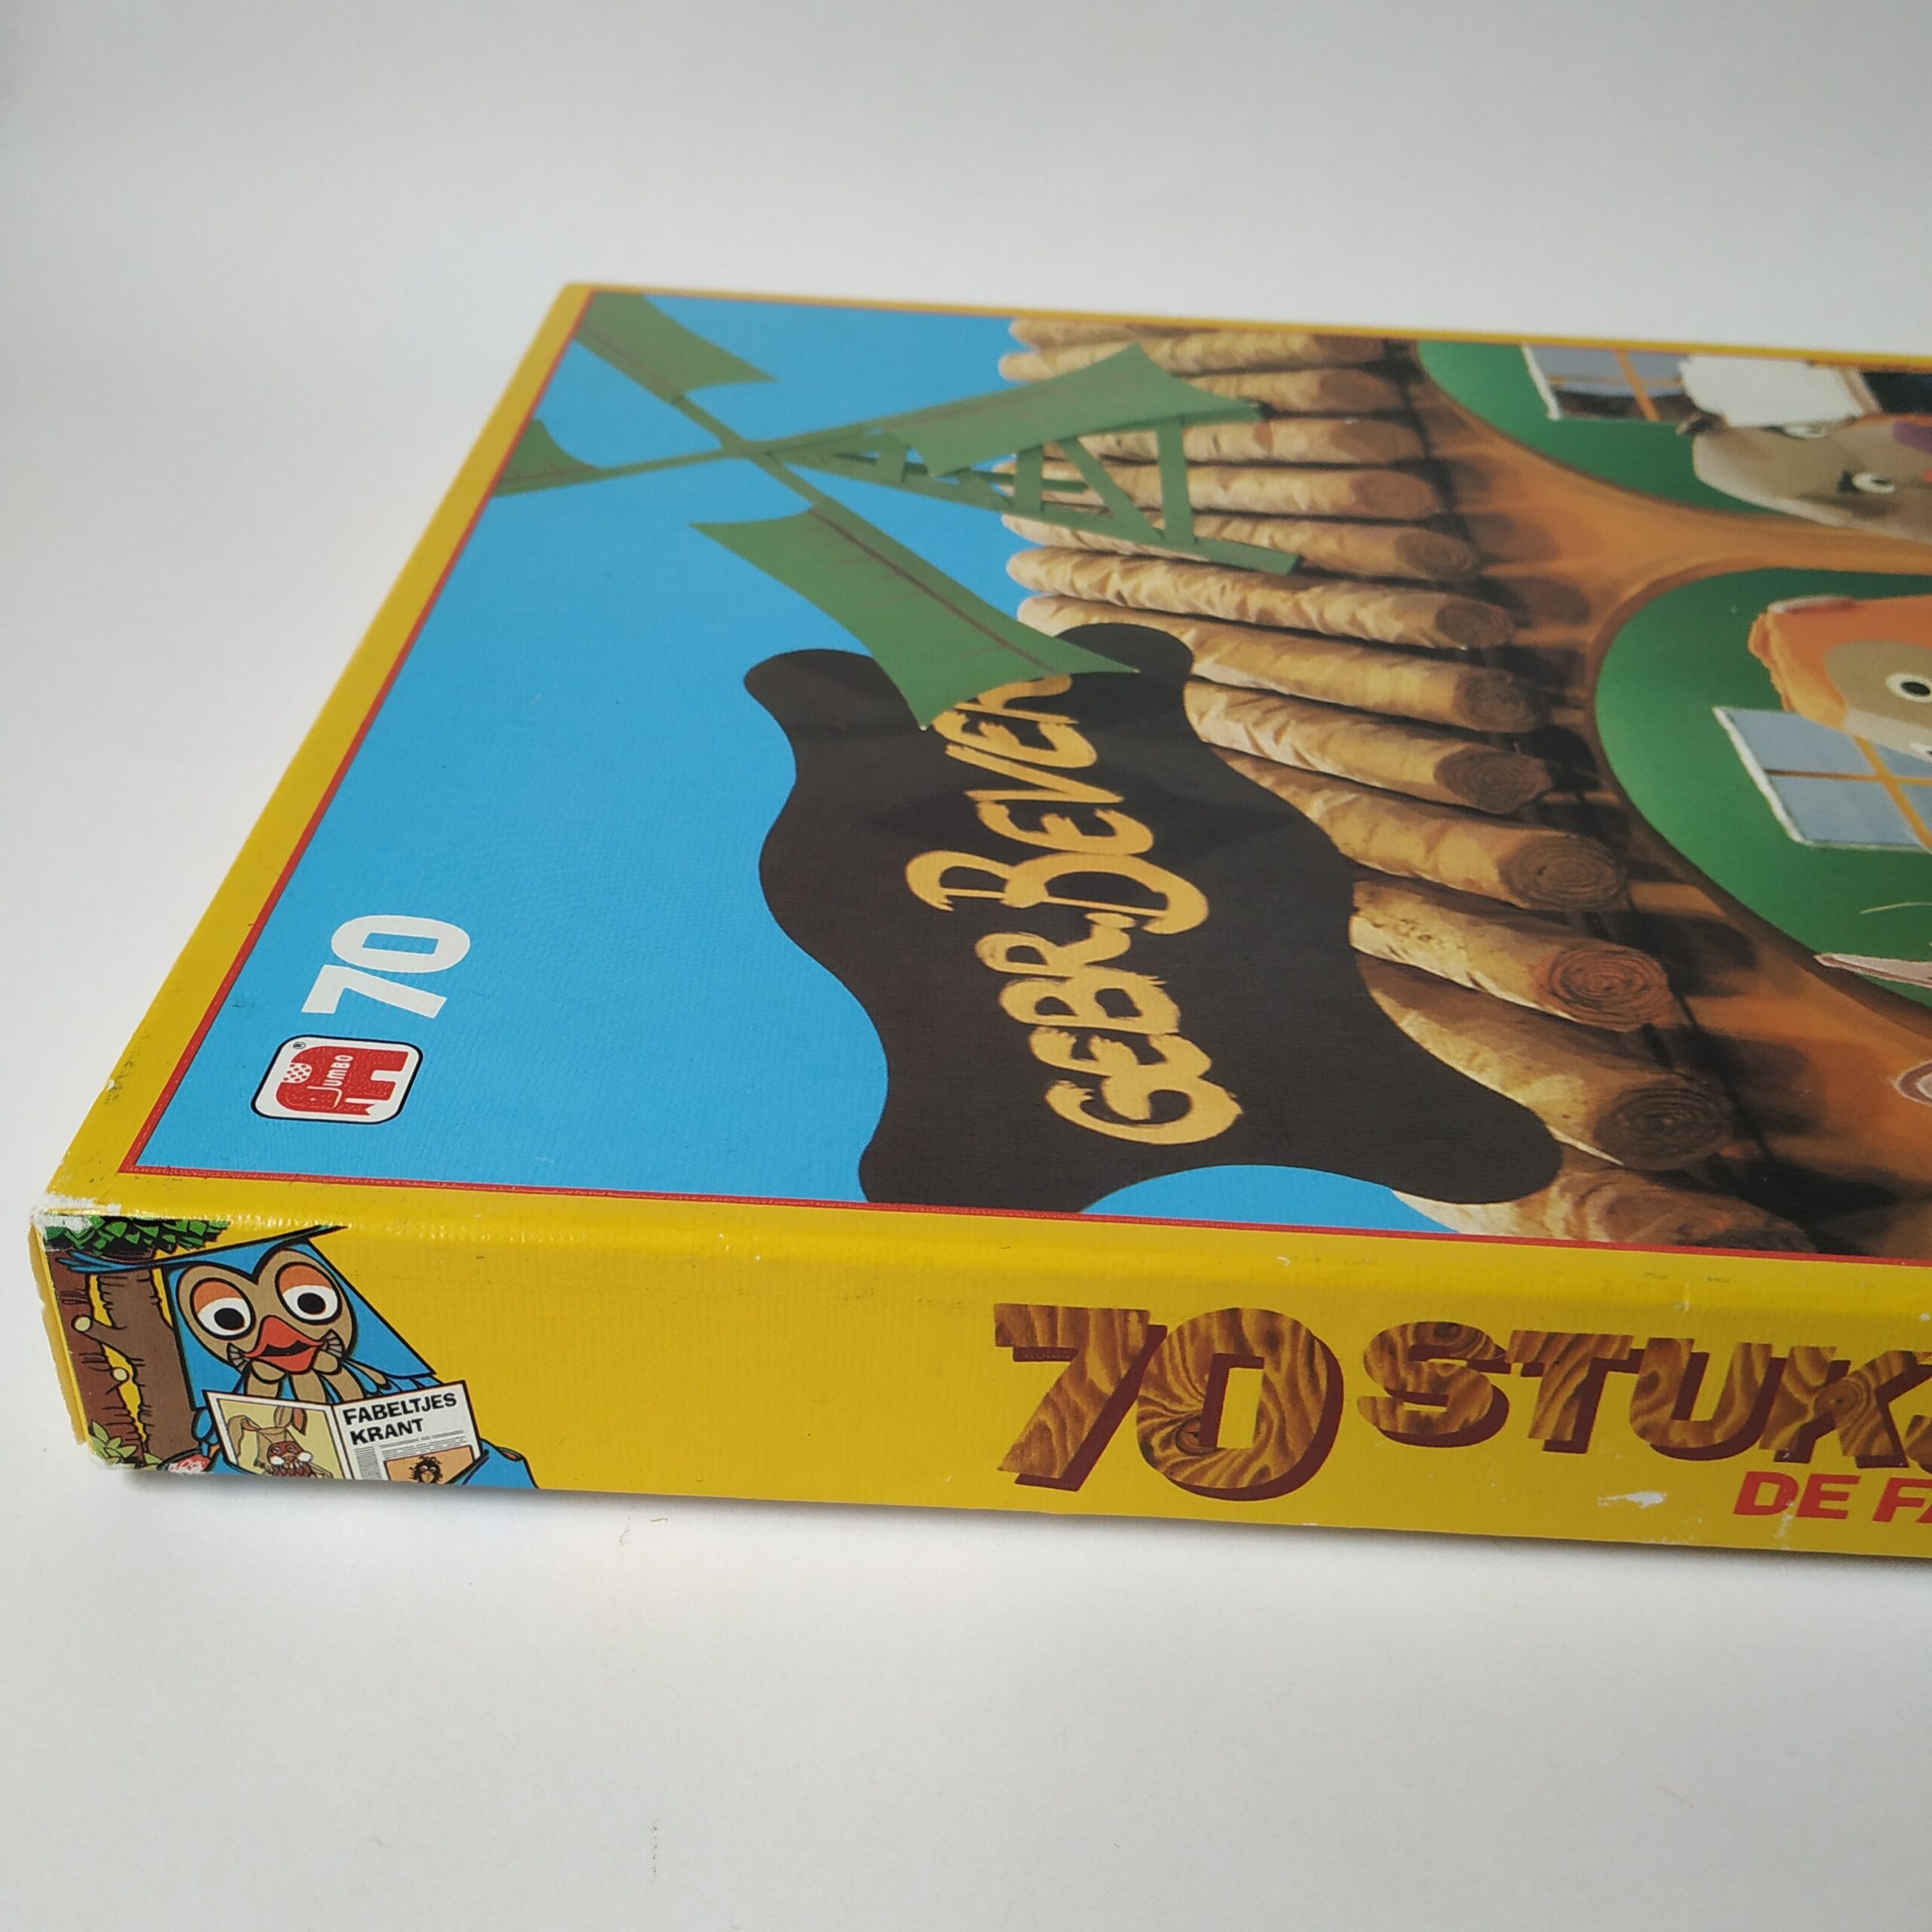 Puzzel Fabeltjeskrant van Jumbo uit 1985 – 70 stuks (2)